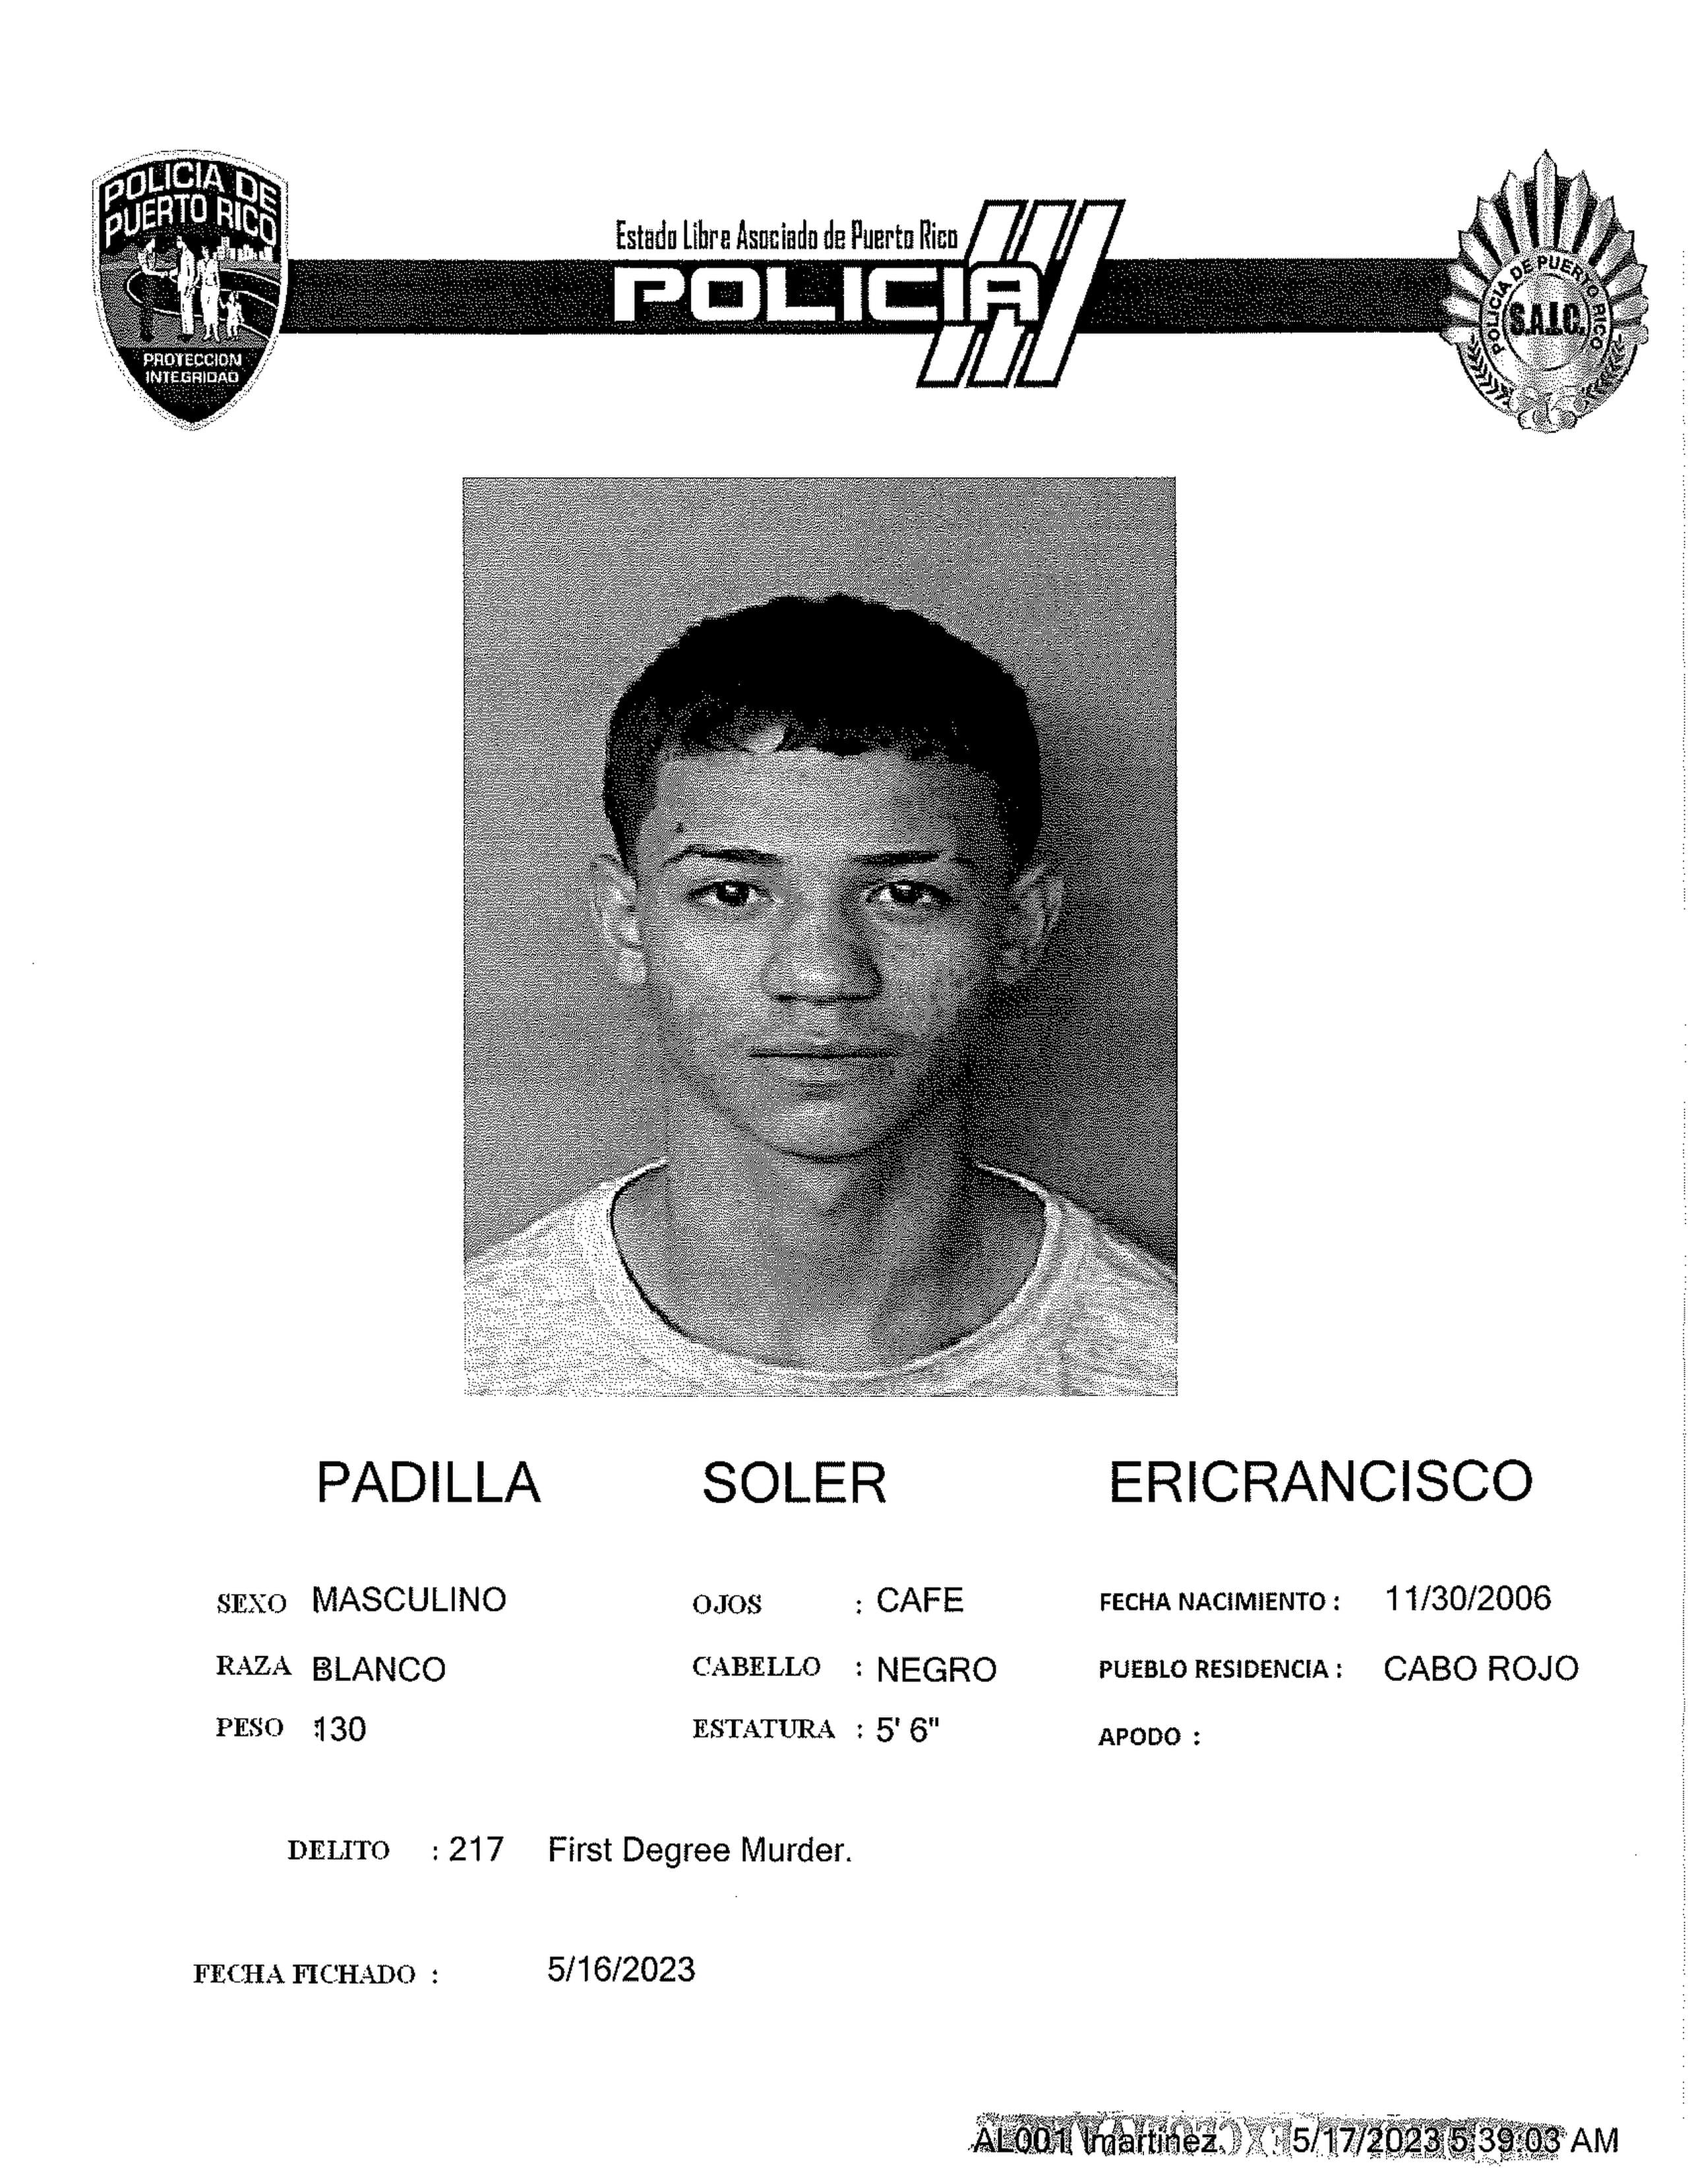 Ficha policial de Ericrancisco Padilla Soler, quien fue procesado como adulto por asesinato en primer grado.